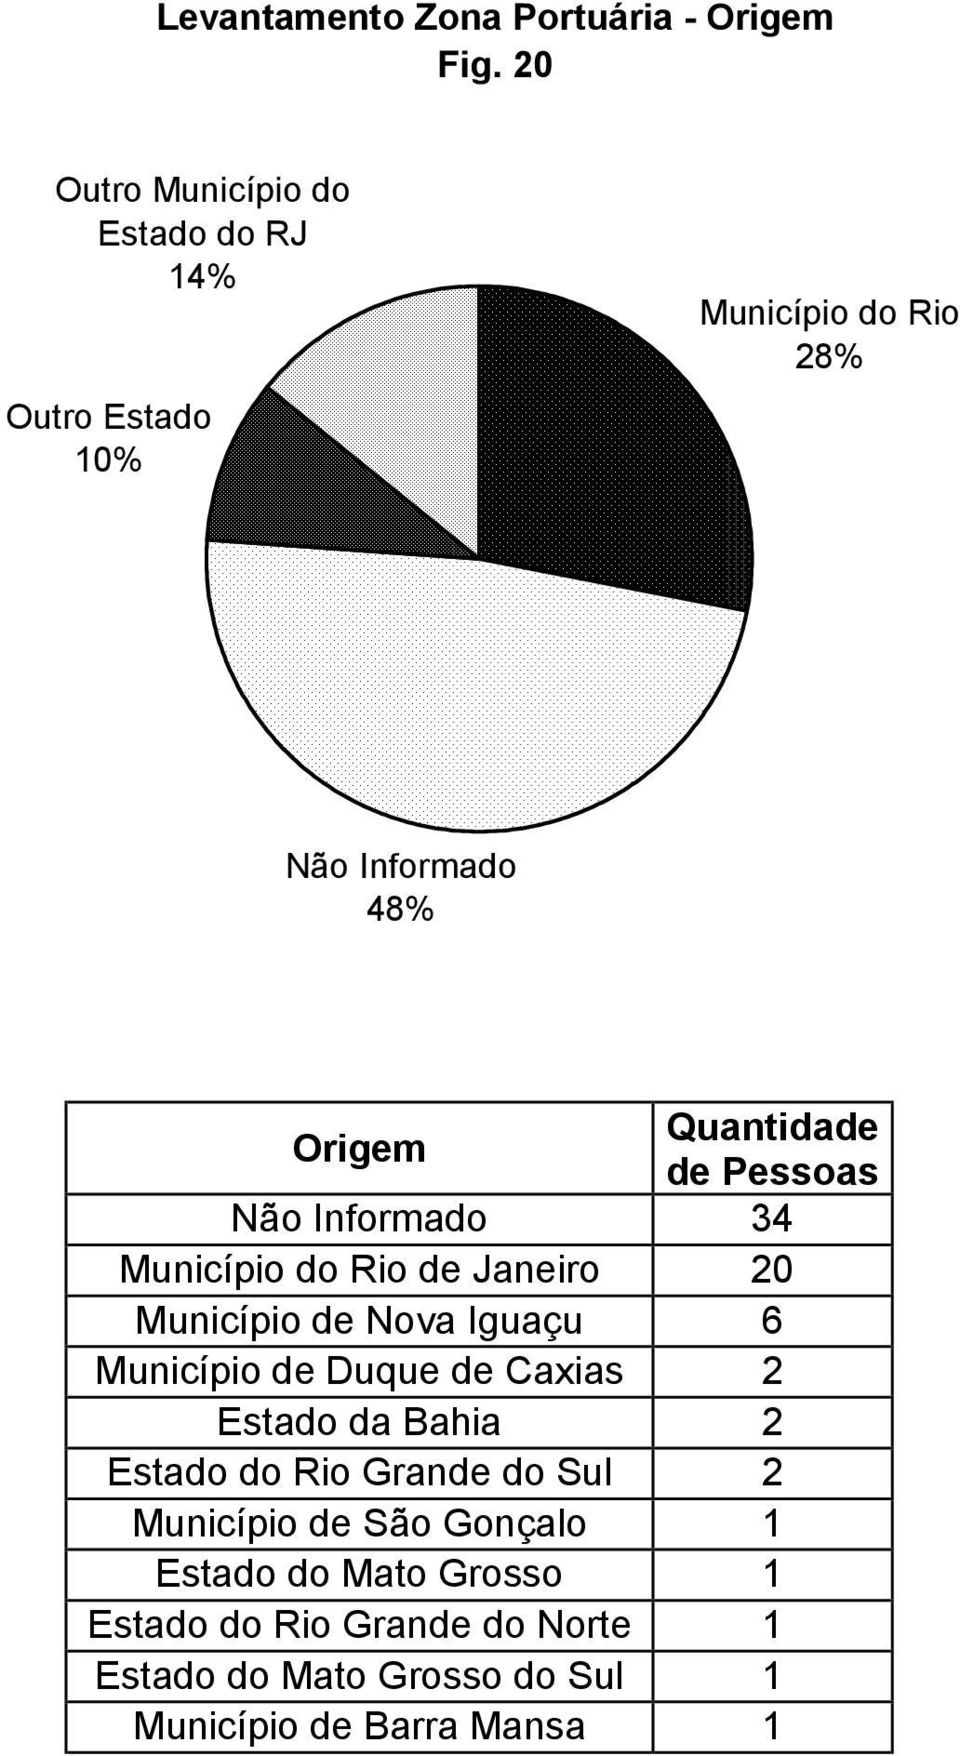 Pessoas 34 Município do Rio de Janeiro 20 Município de Nova Iguaçu 6 Município de Duque de Caxias 2 Estado